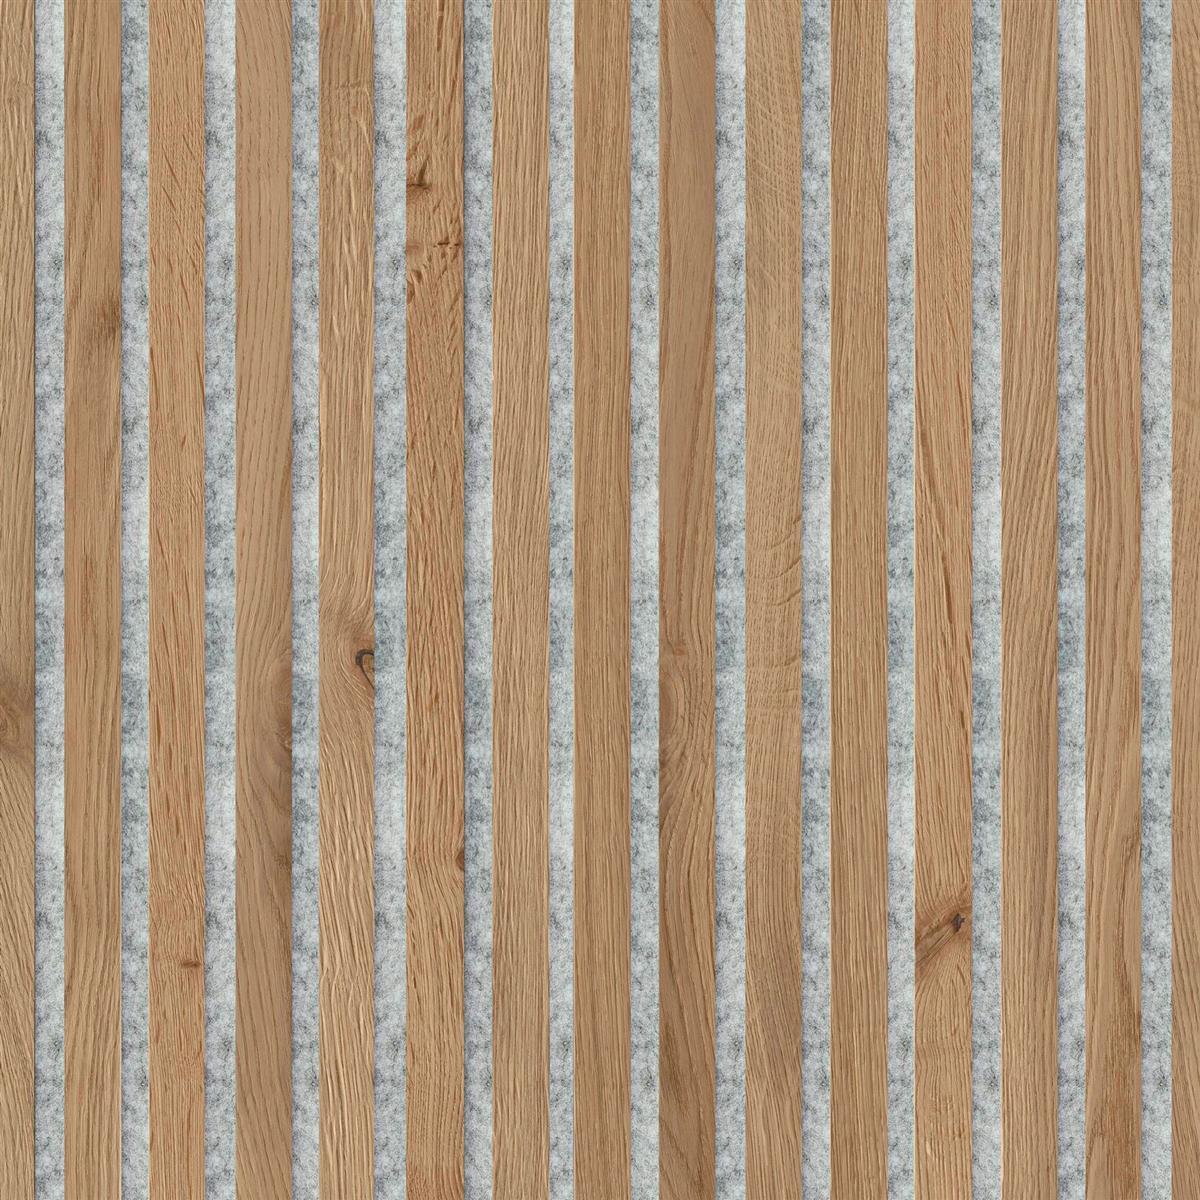 JOKA Paro Akustik Wandpaneele PAG330 240 cm Eiche schlicht, graues Vlies - geölt Echtholzpaneel